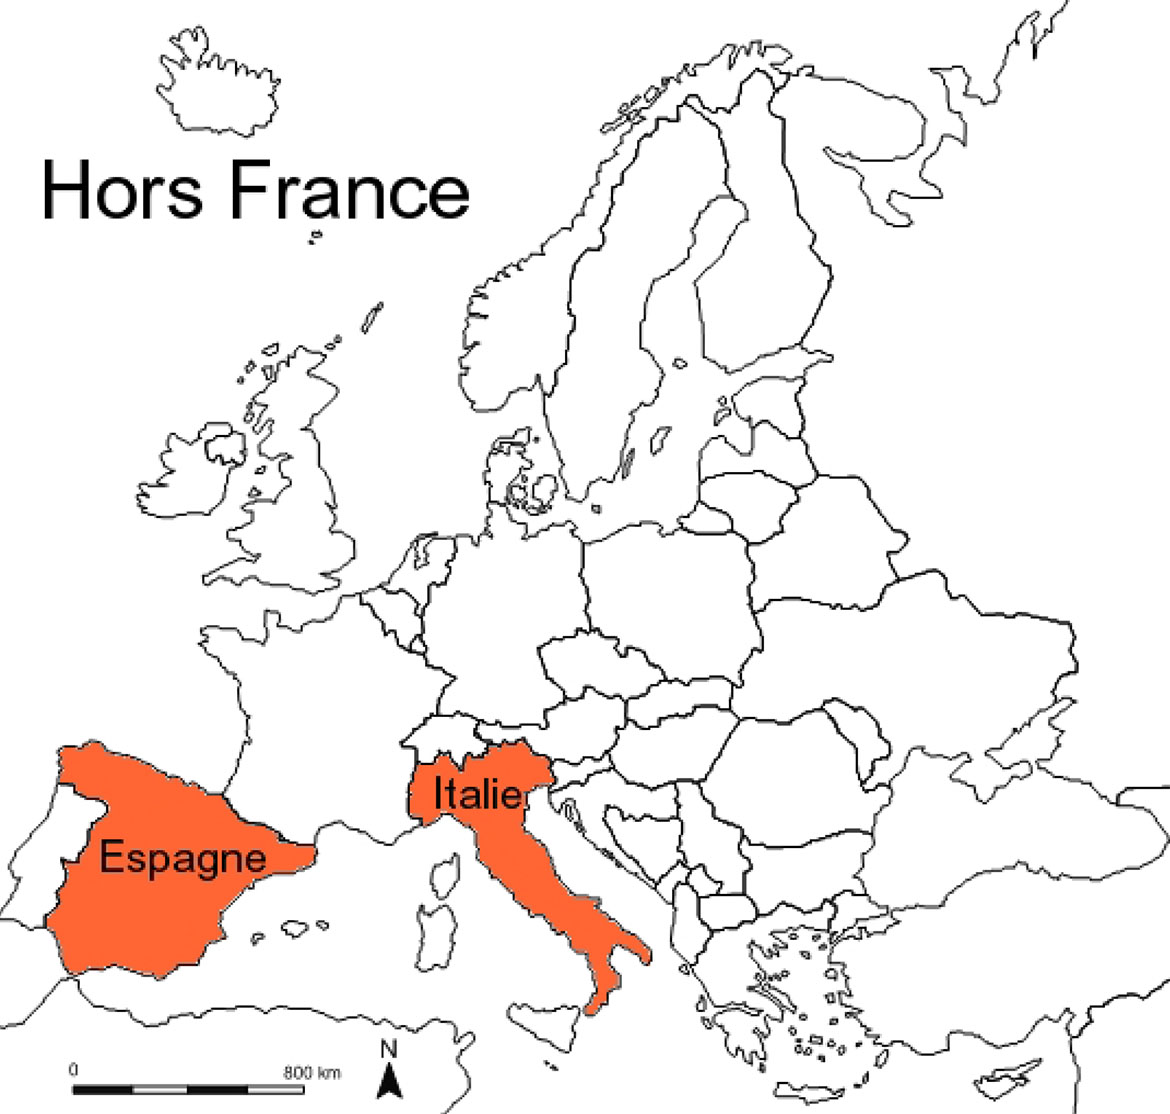 Hors France